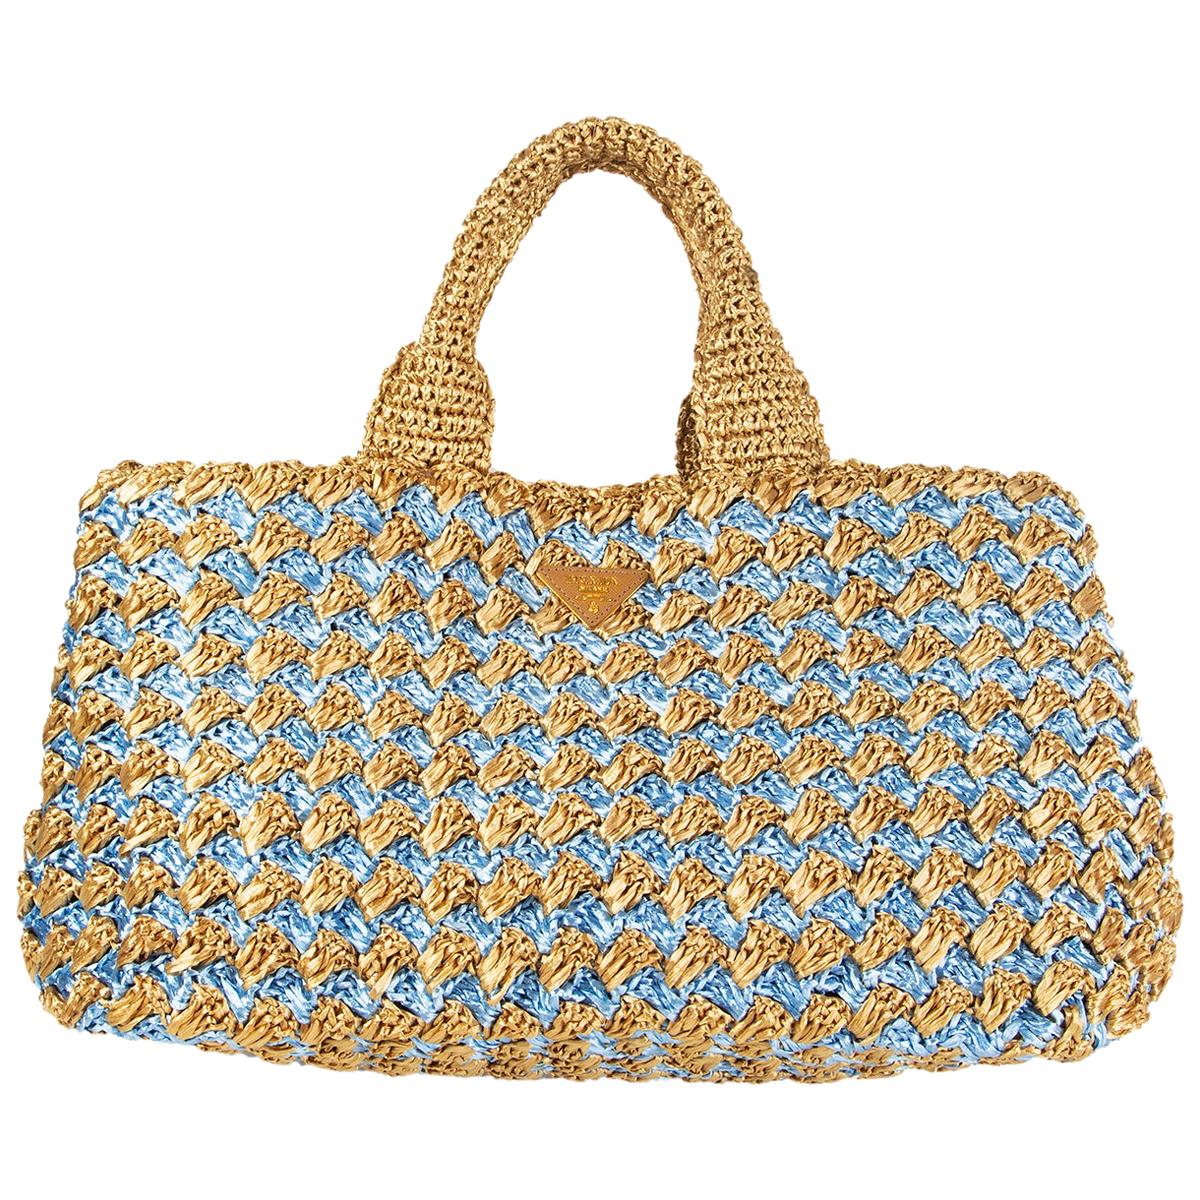 Prada - Women's Crochet Tote Bag Beach Bag - Natural